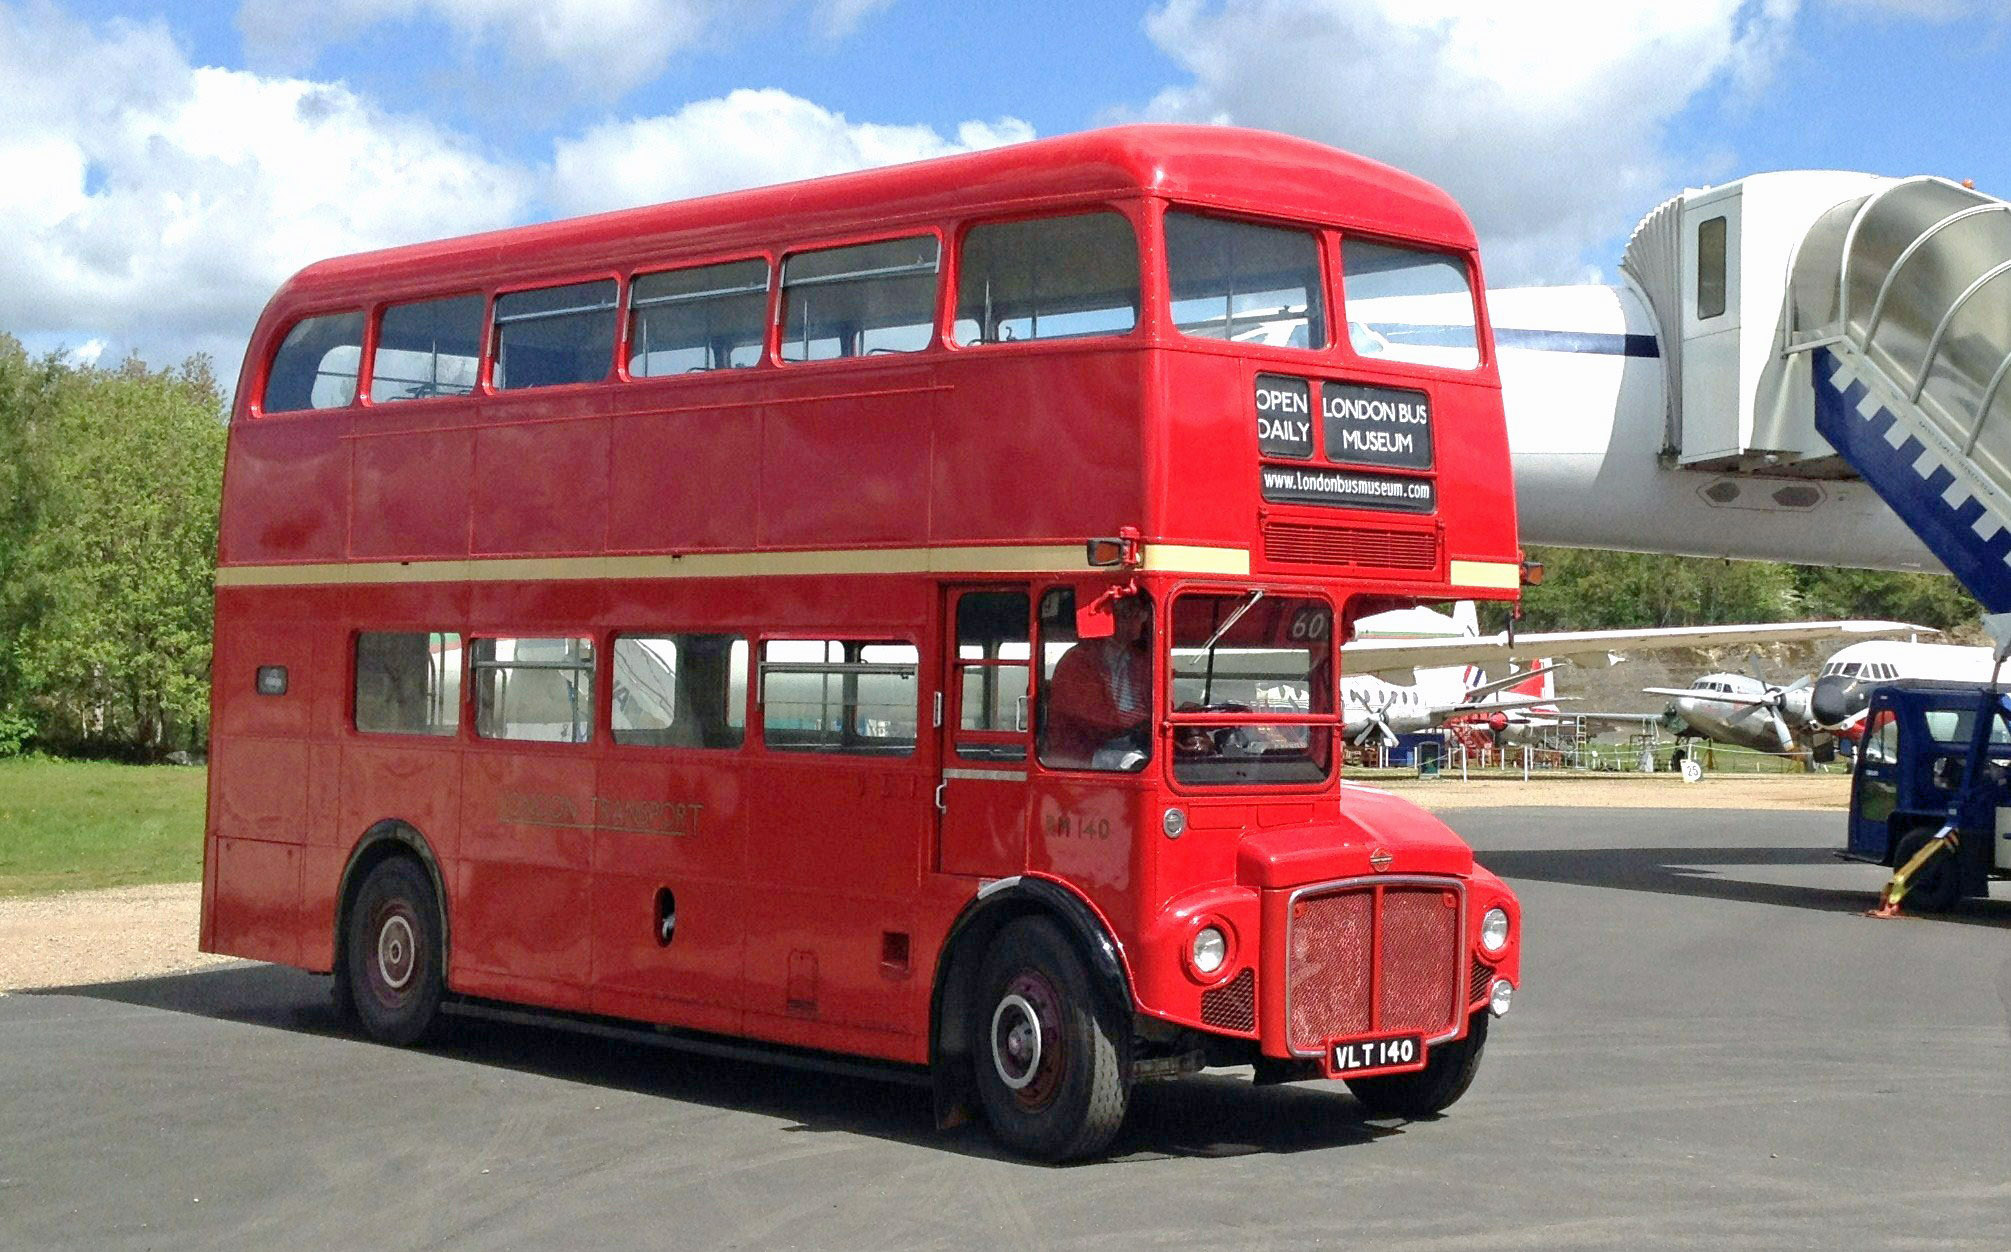 1959 Aec Routemaster Bus Rm140 London Bus Museum